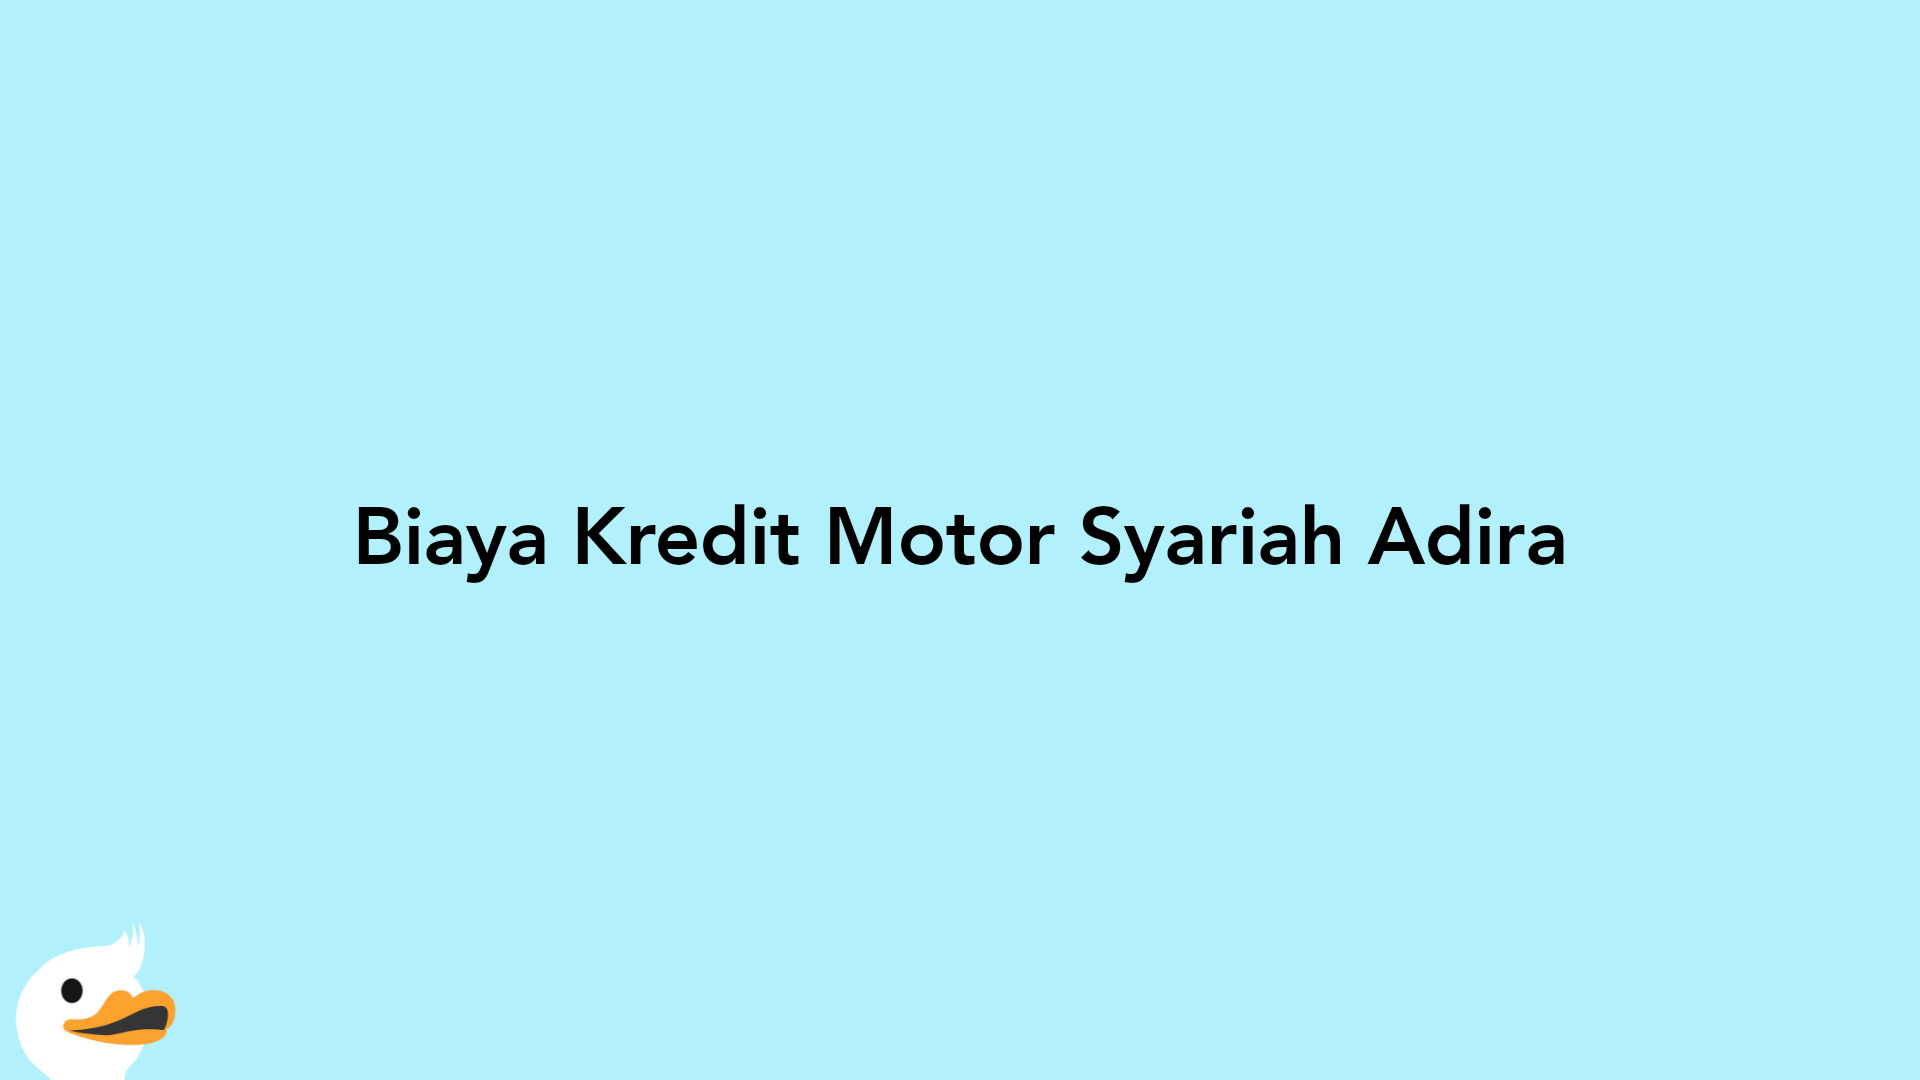 Biaya Kredit Motor Syariah Adira